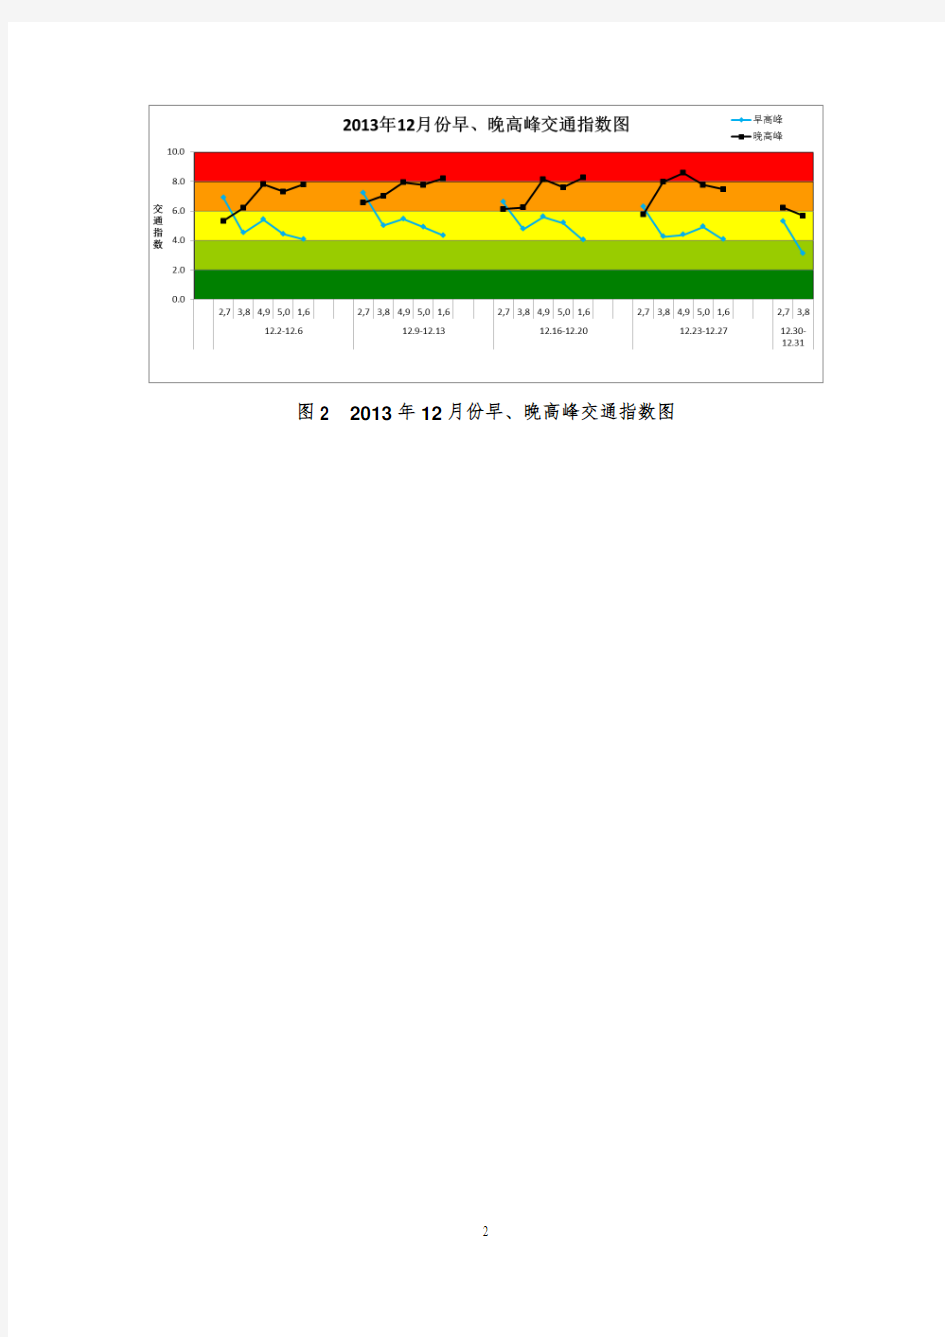 北京市道路交通运行分析报告